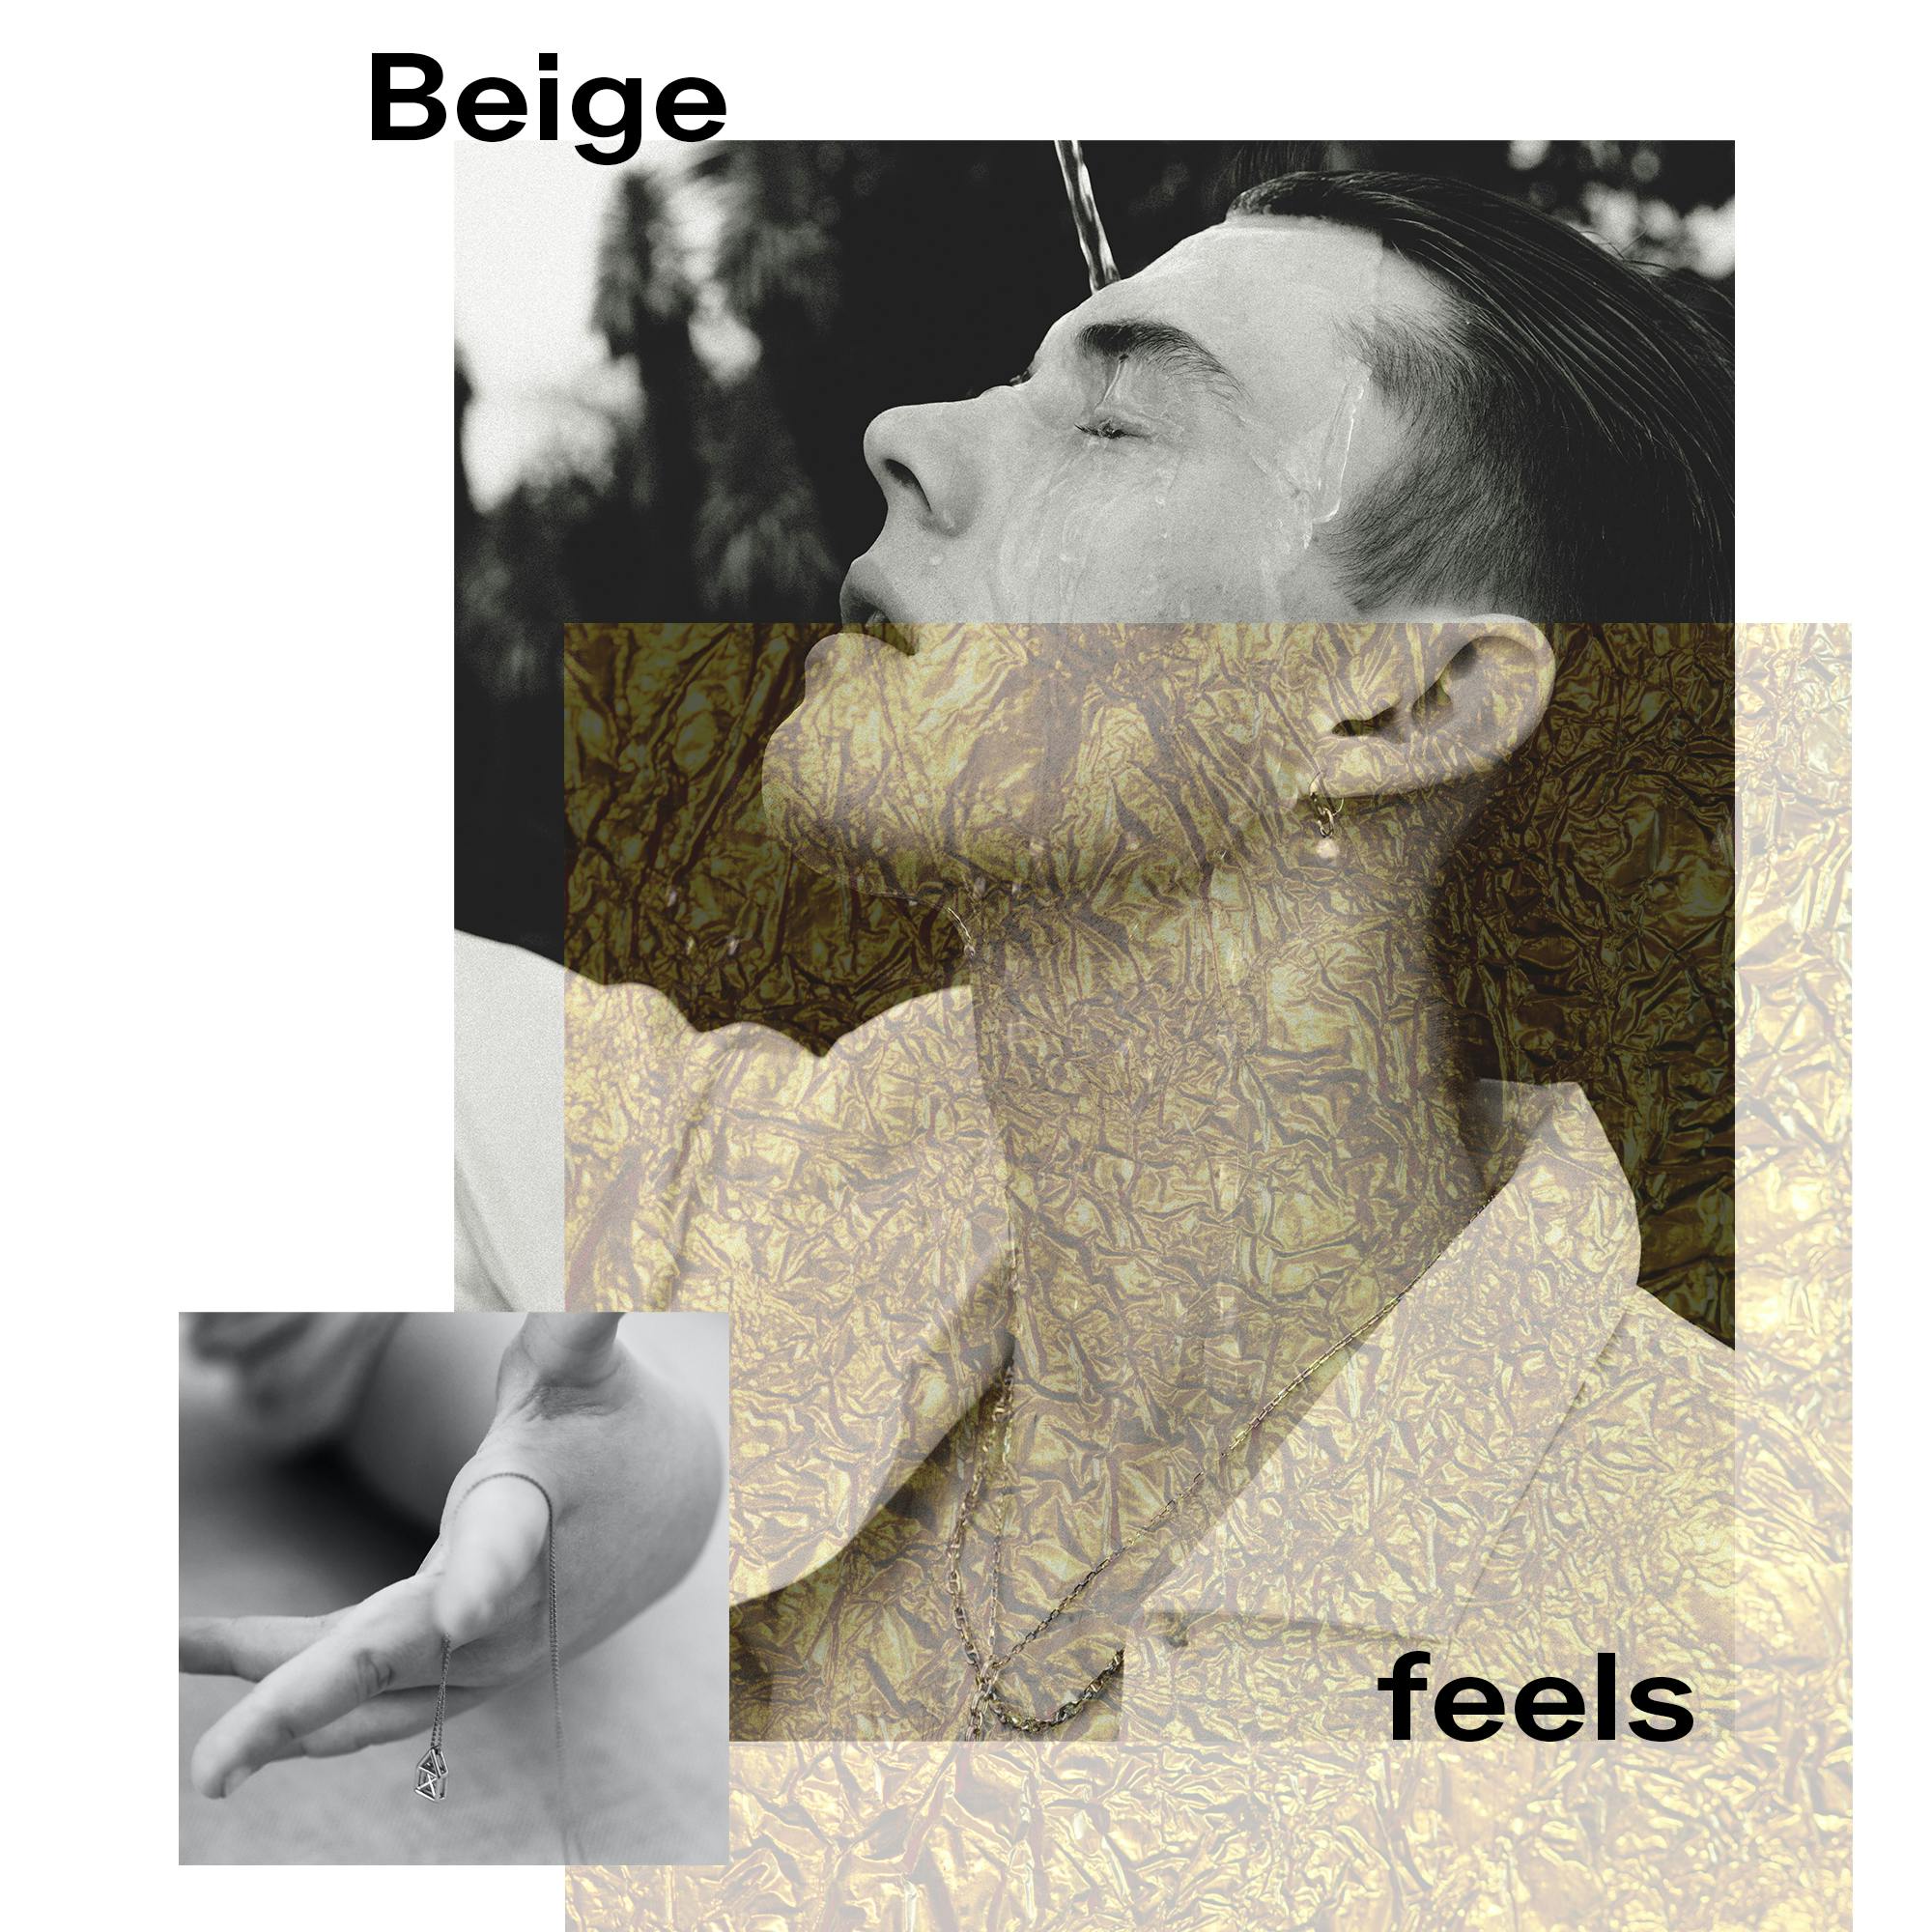 Beige feels: Immer mit der Ruhe